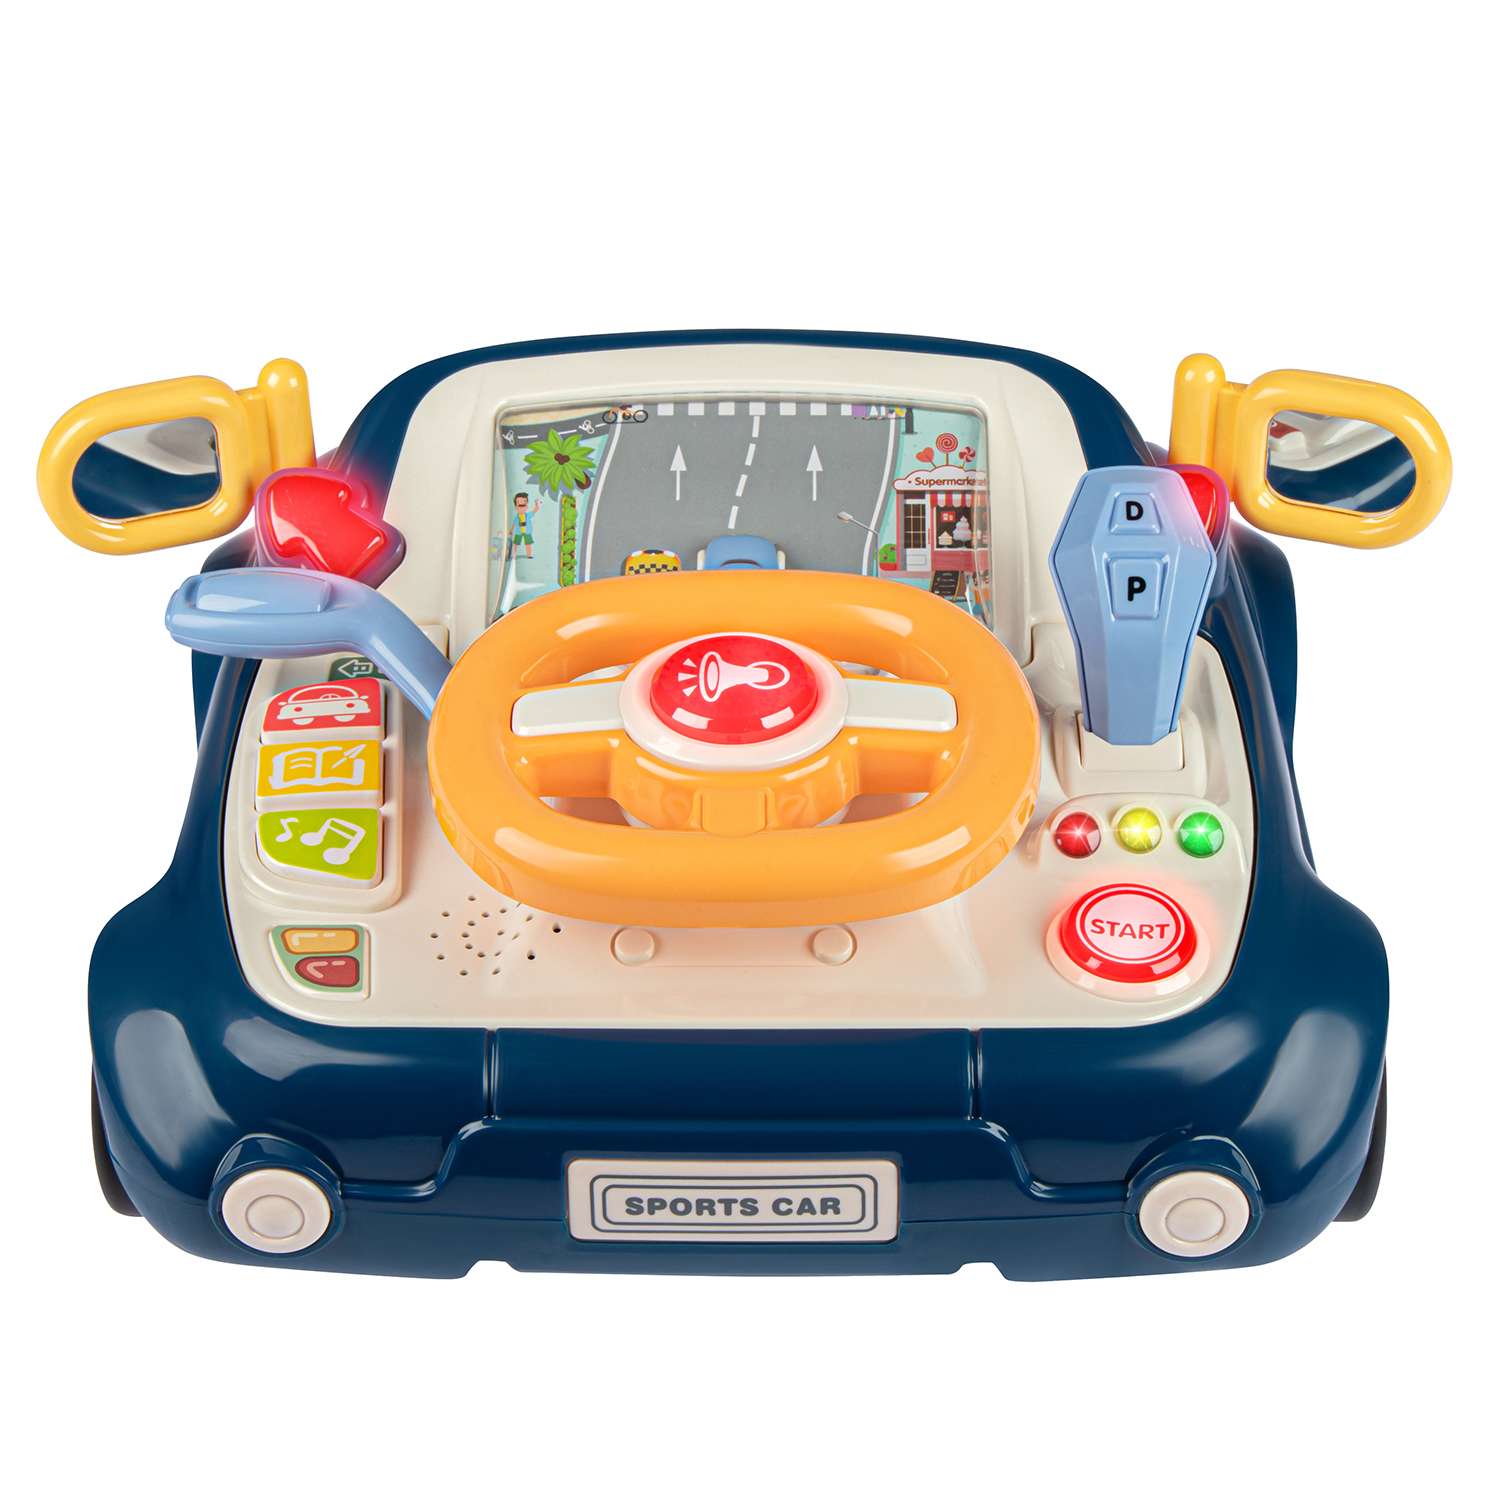 Развивающая игрушка Smart Baby игровой обучающий центр музыкальный JB0334086 - фото 10